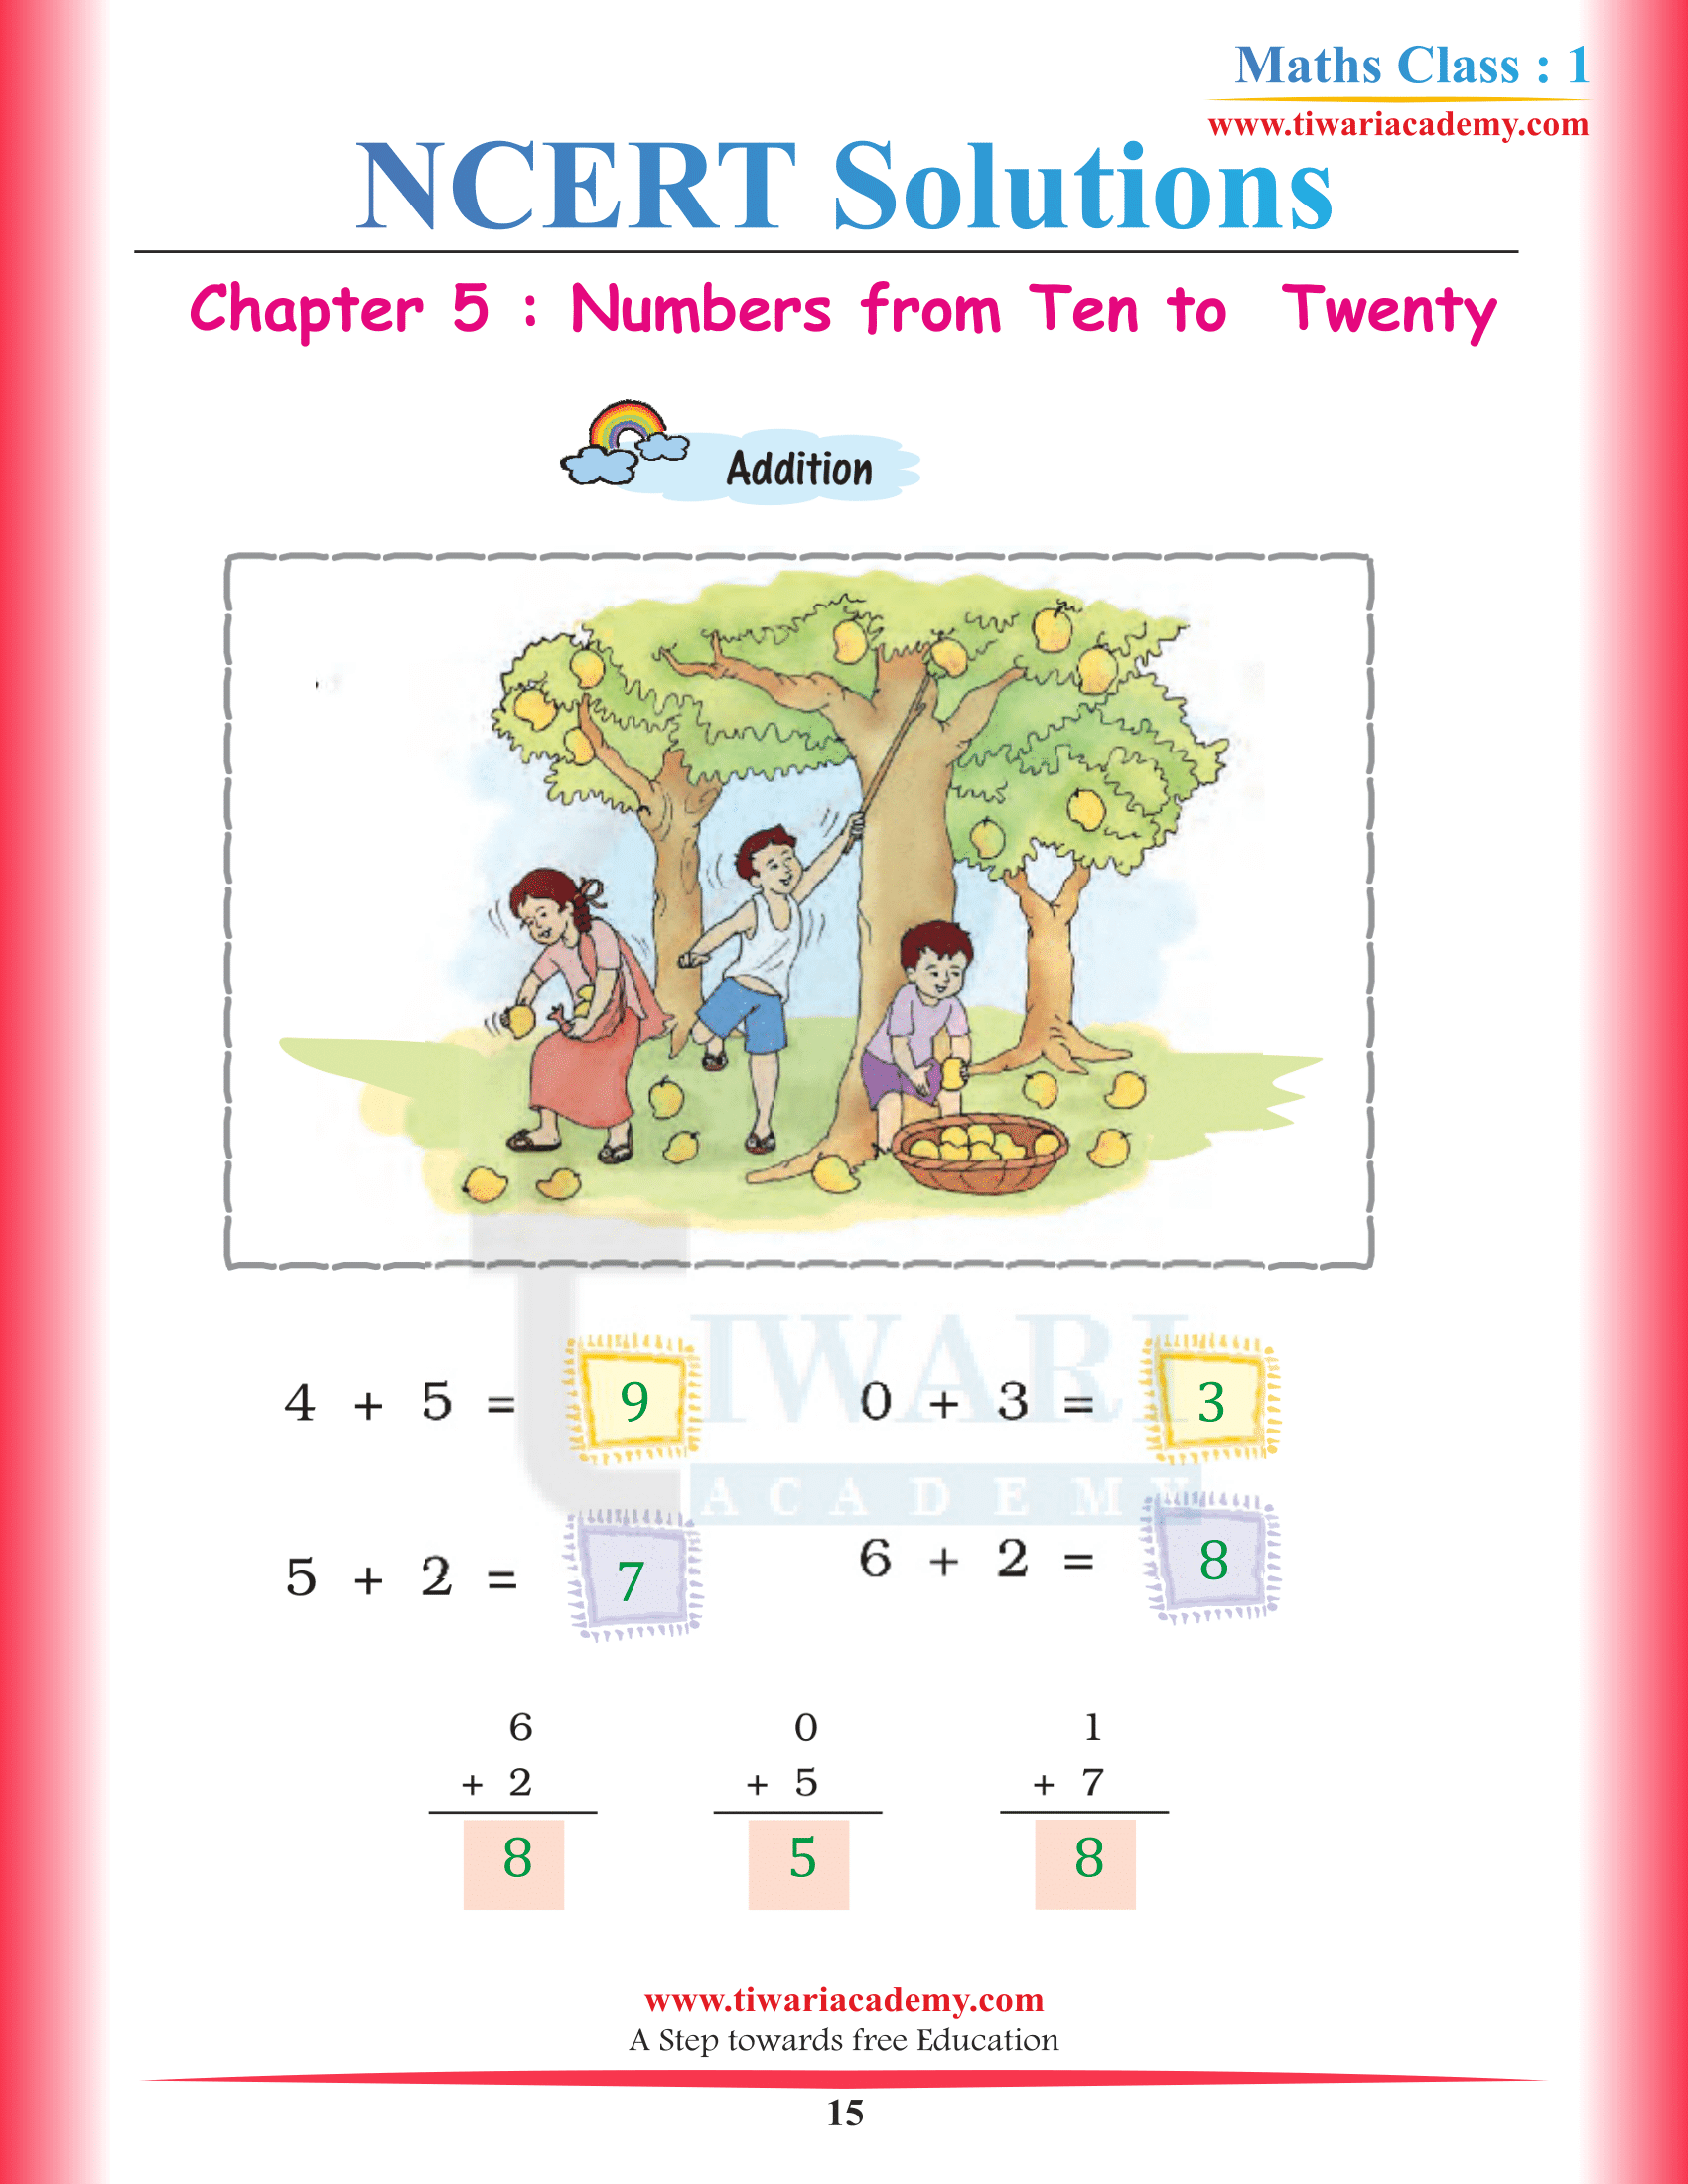 Standard 1st Maths Chapter 5 all questions